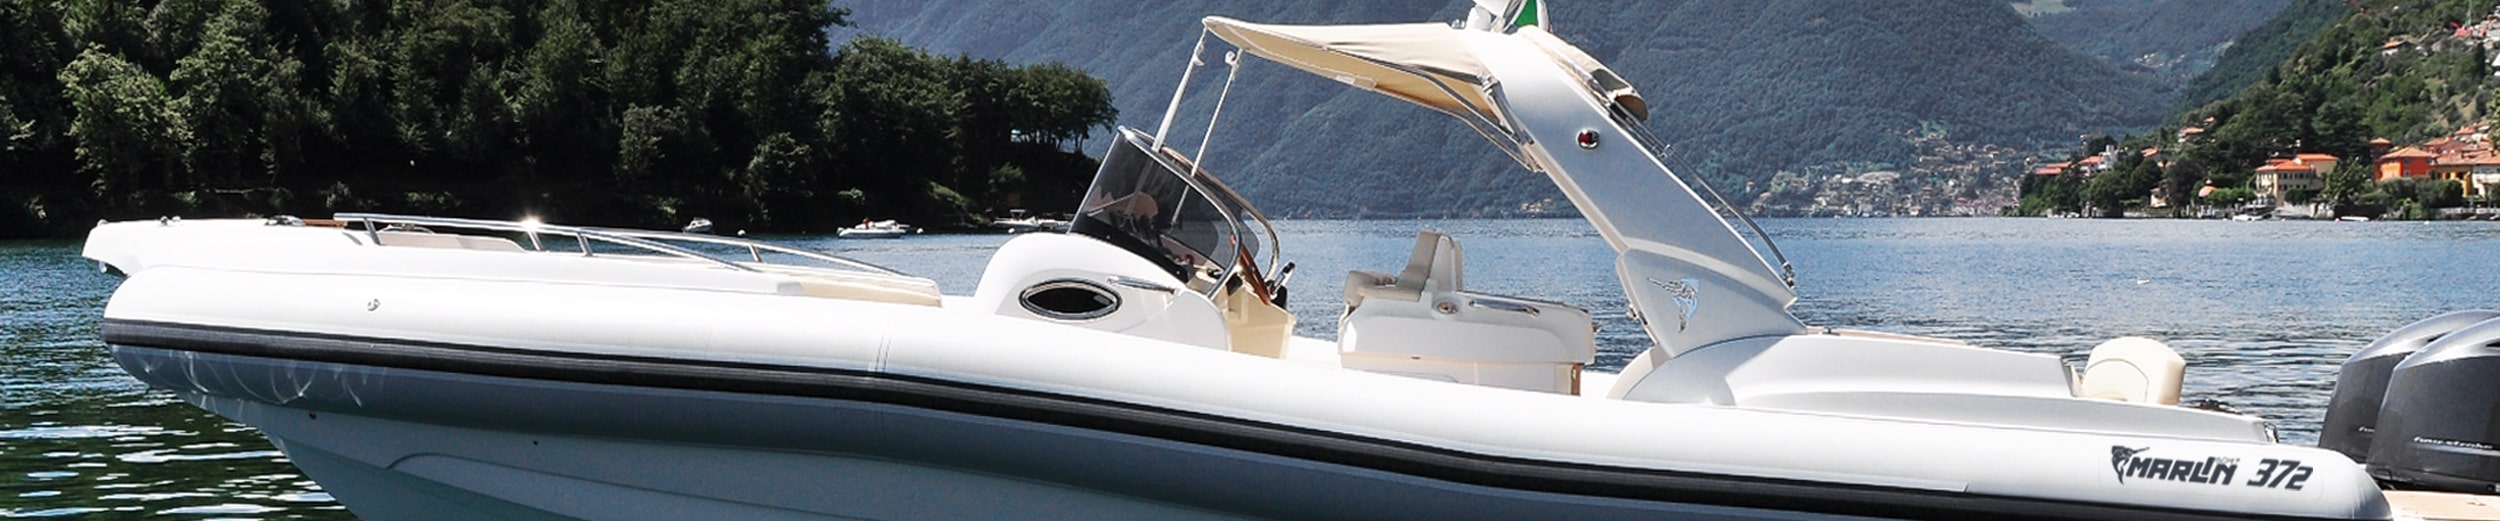 Marlin Boat - Gommone Fuoribordo Modello 372